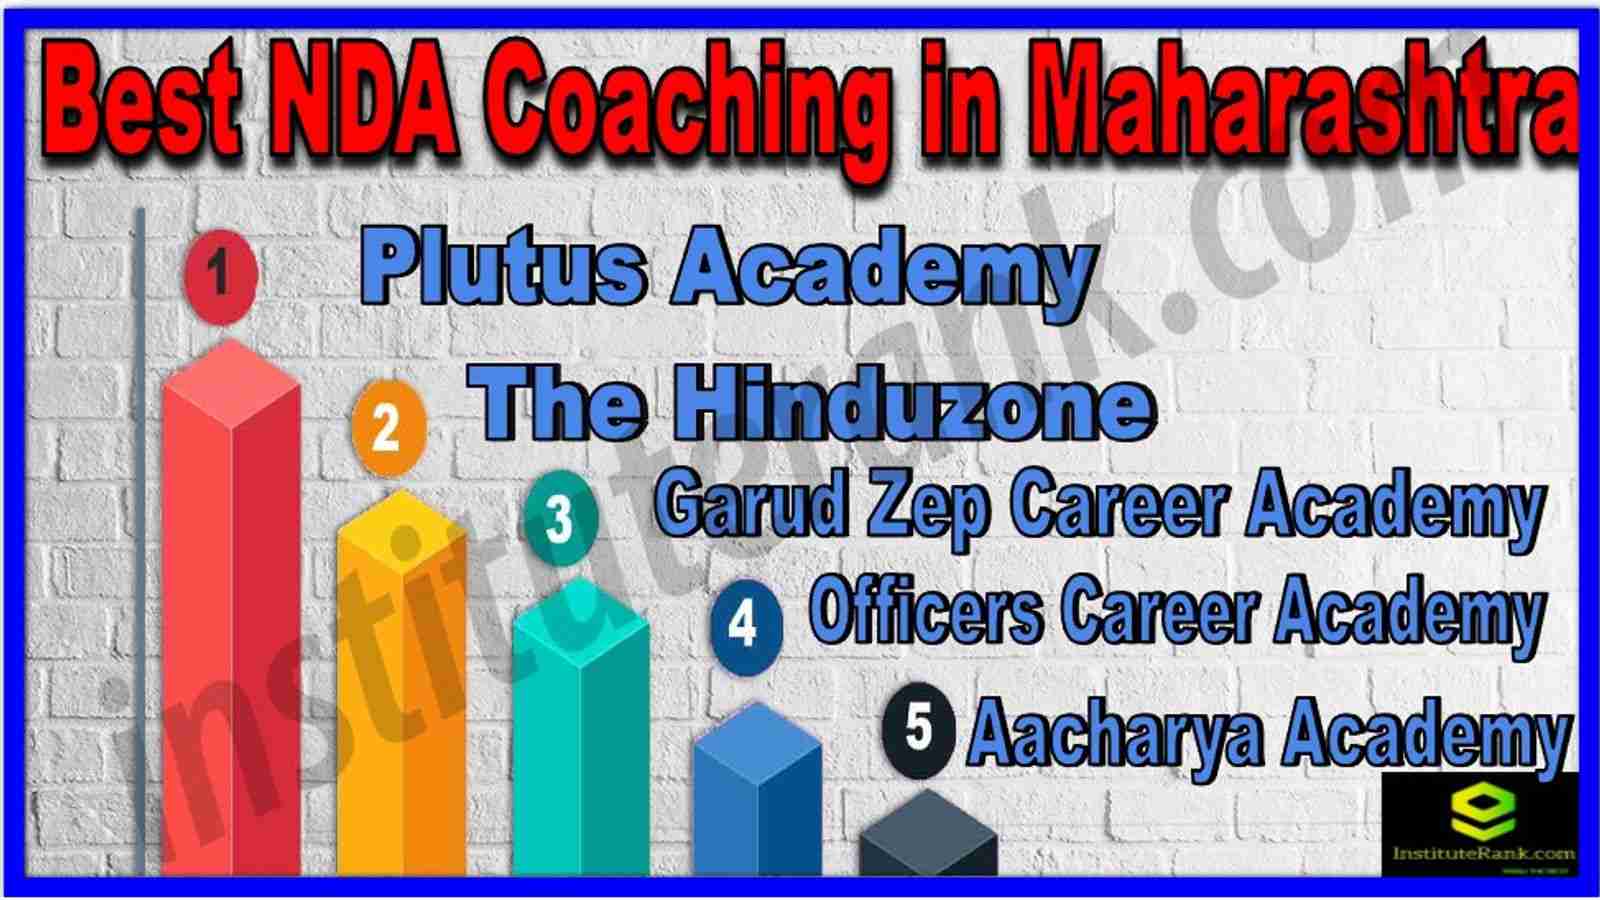 Best NDA Coaching in Maharashtra